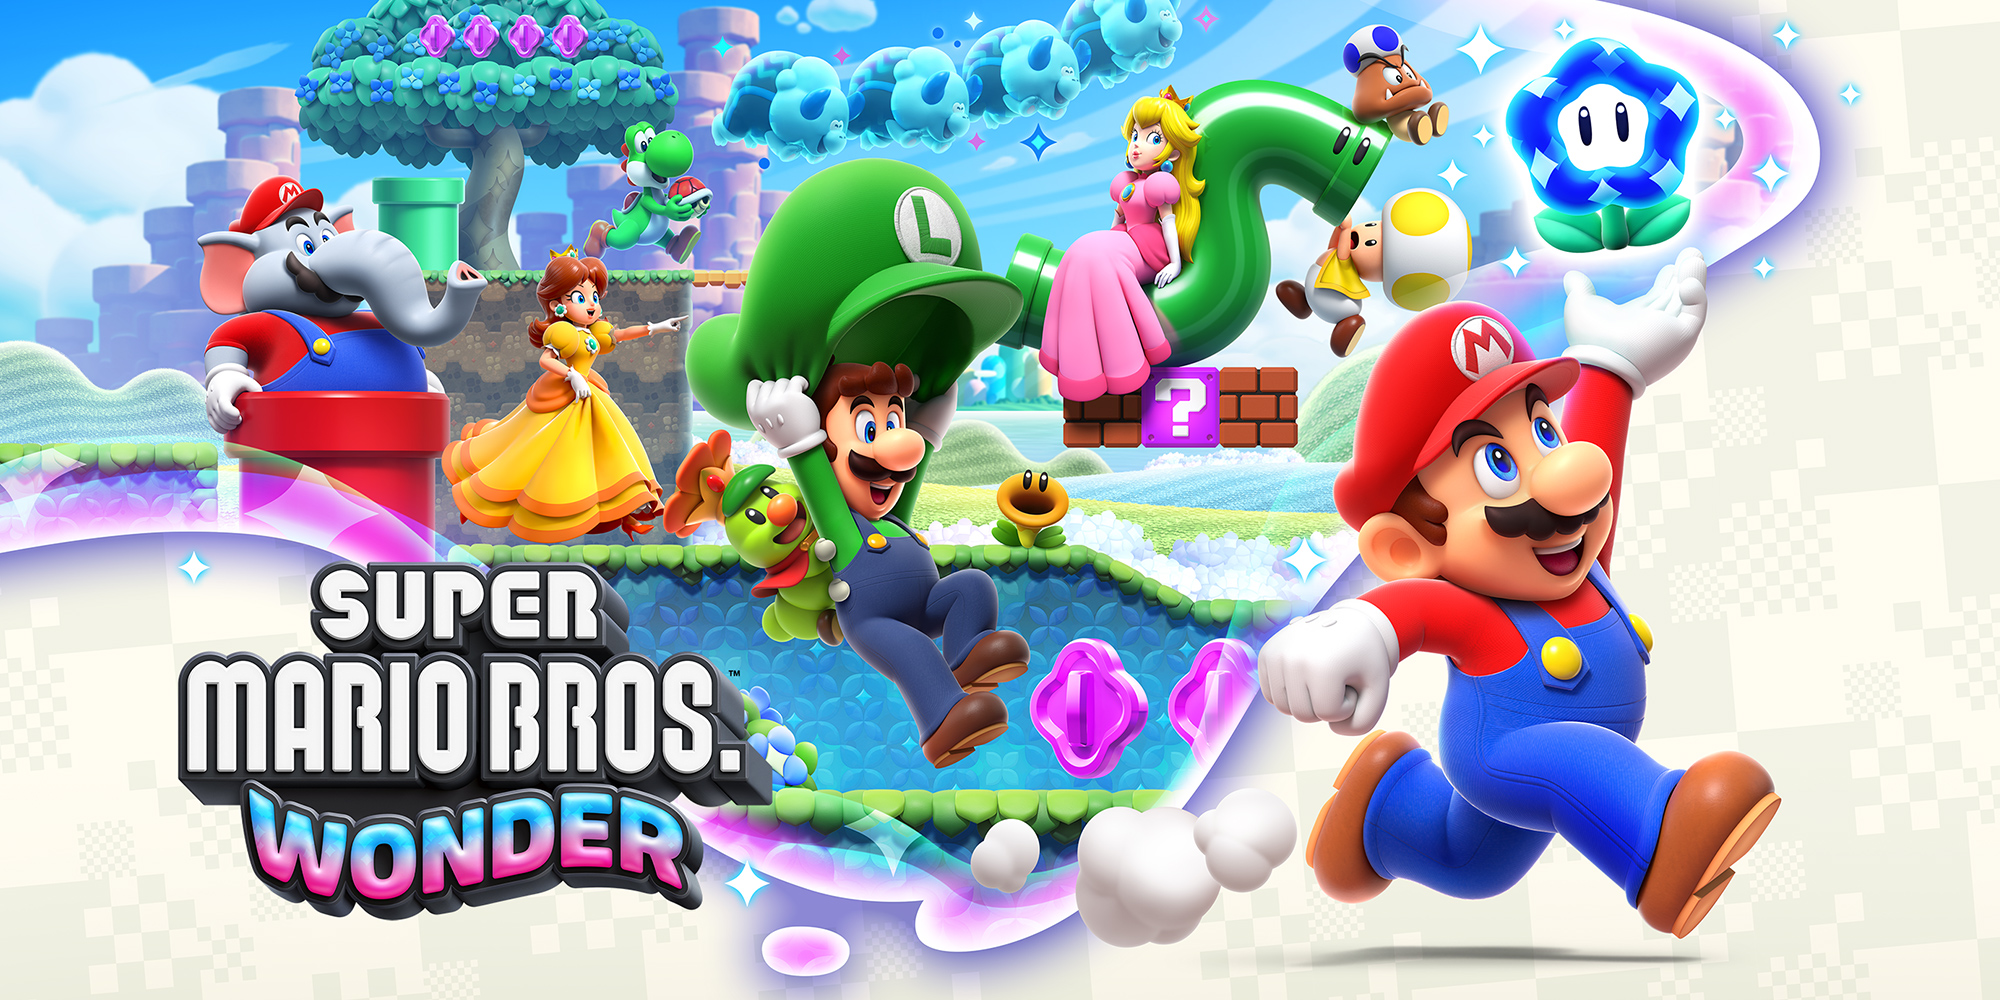 Super Mario Bros. Wonder occuperà circa 4,5 GB di spazio su Switch